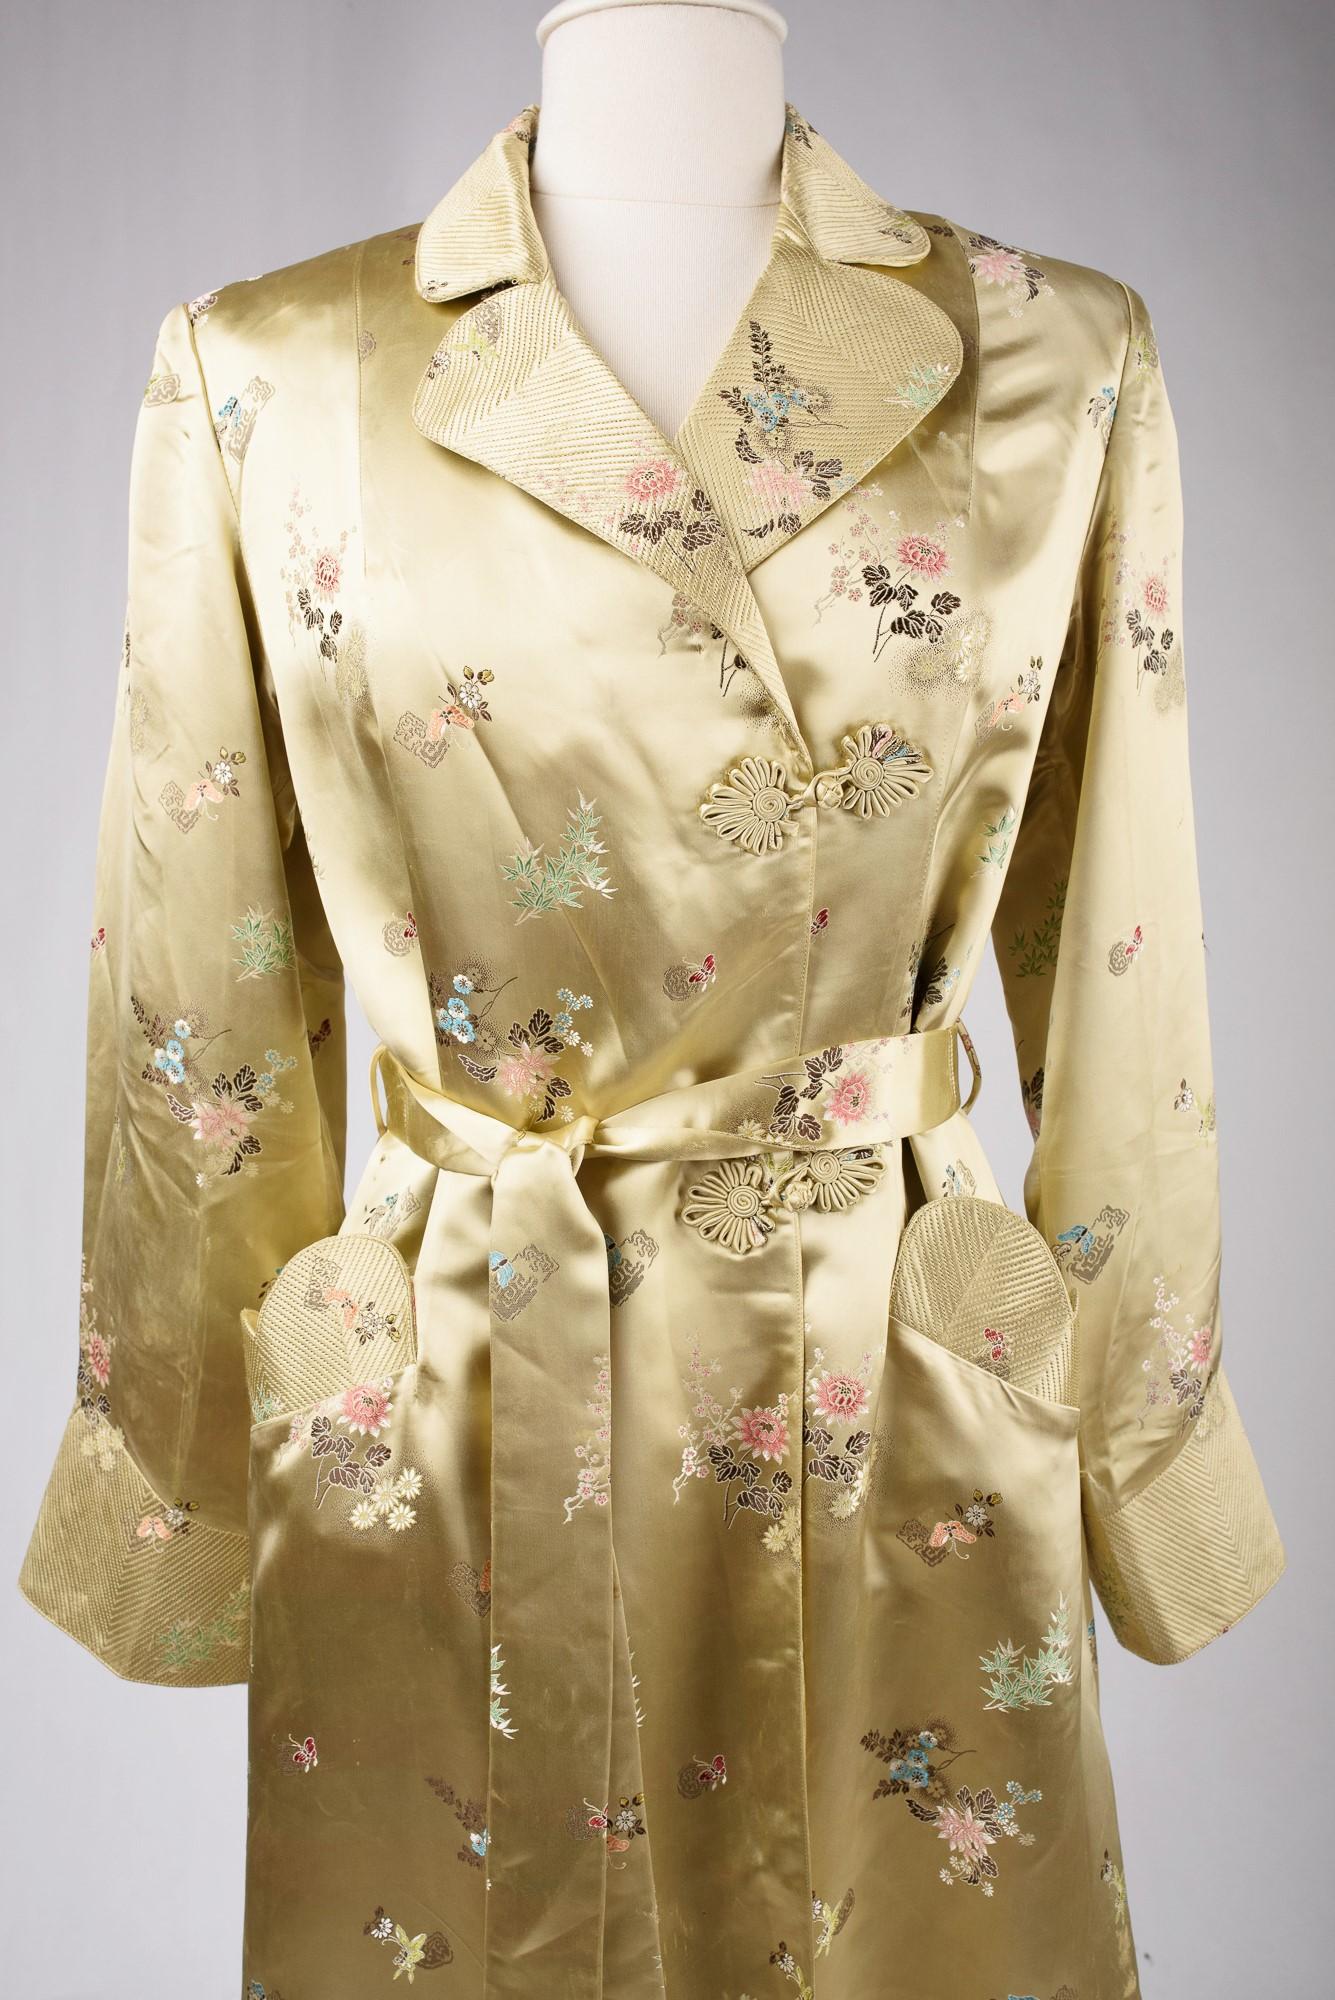 Vers 1940-1950

Chine pour l'exportation vers l'Europe

Magnifique robe de soirée des années 1940 en satin de soie jaune paille brillant, brodée d'un motif de fleurs japonaises. Manteau ample, croisé sur le devant et fermé par des clochettes en